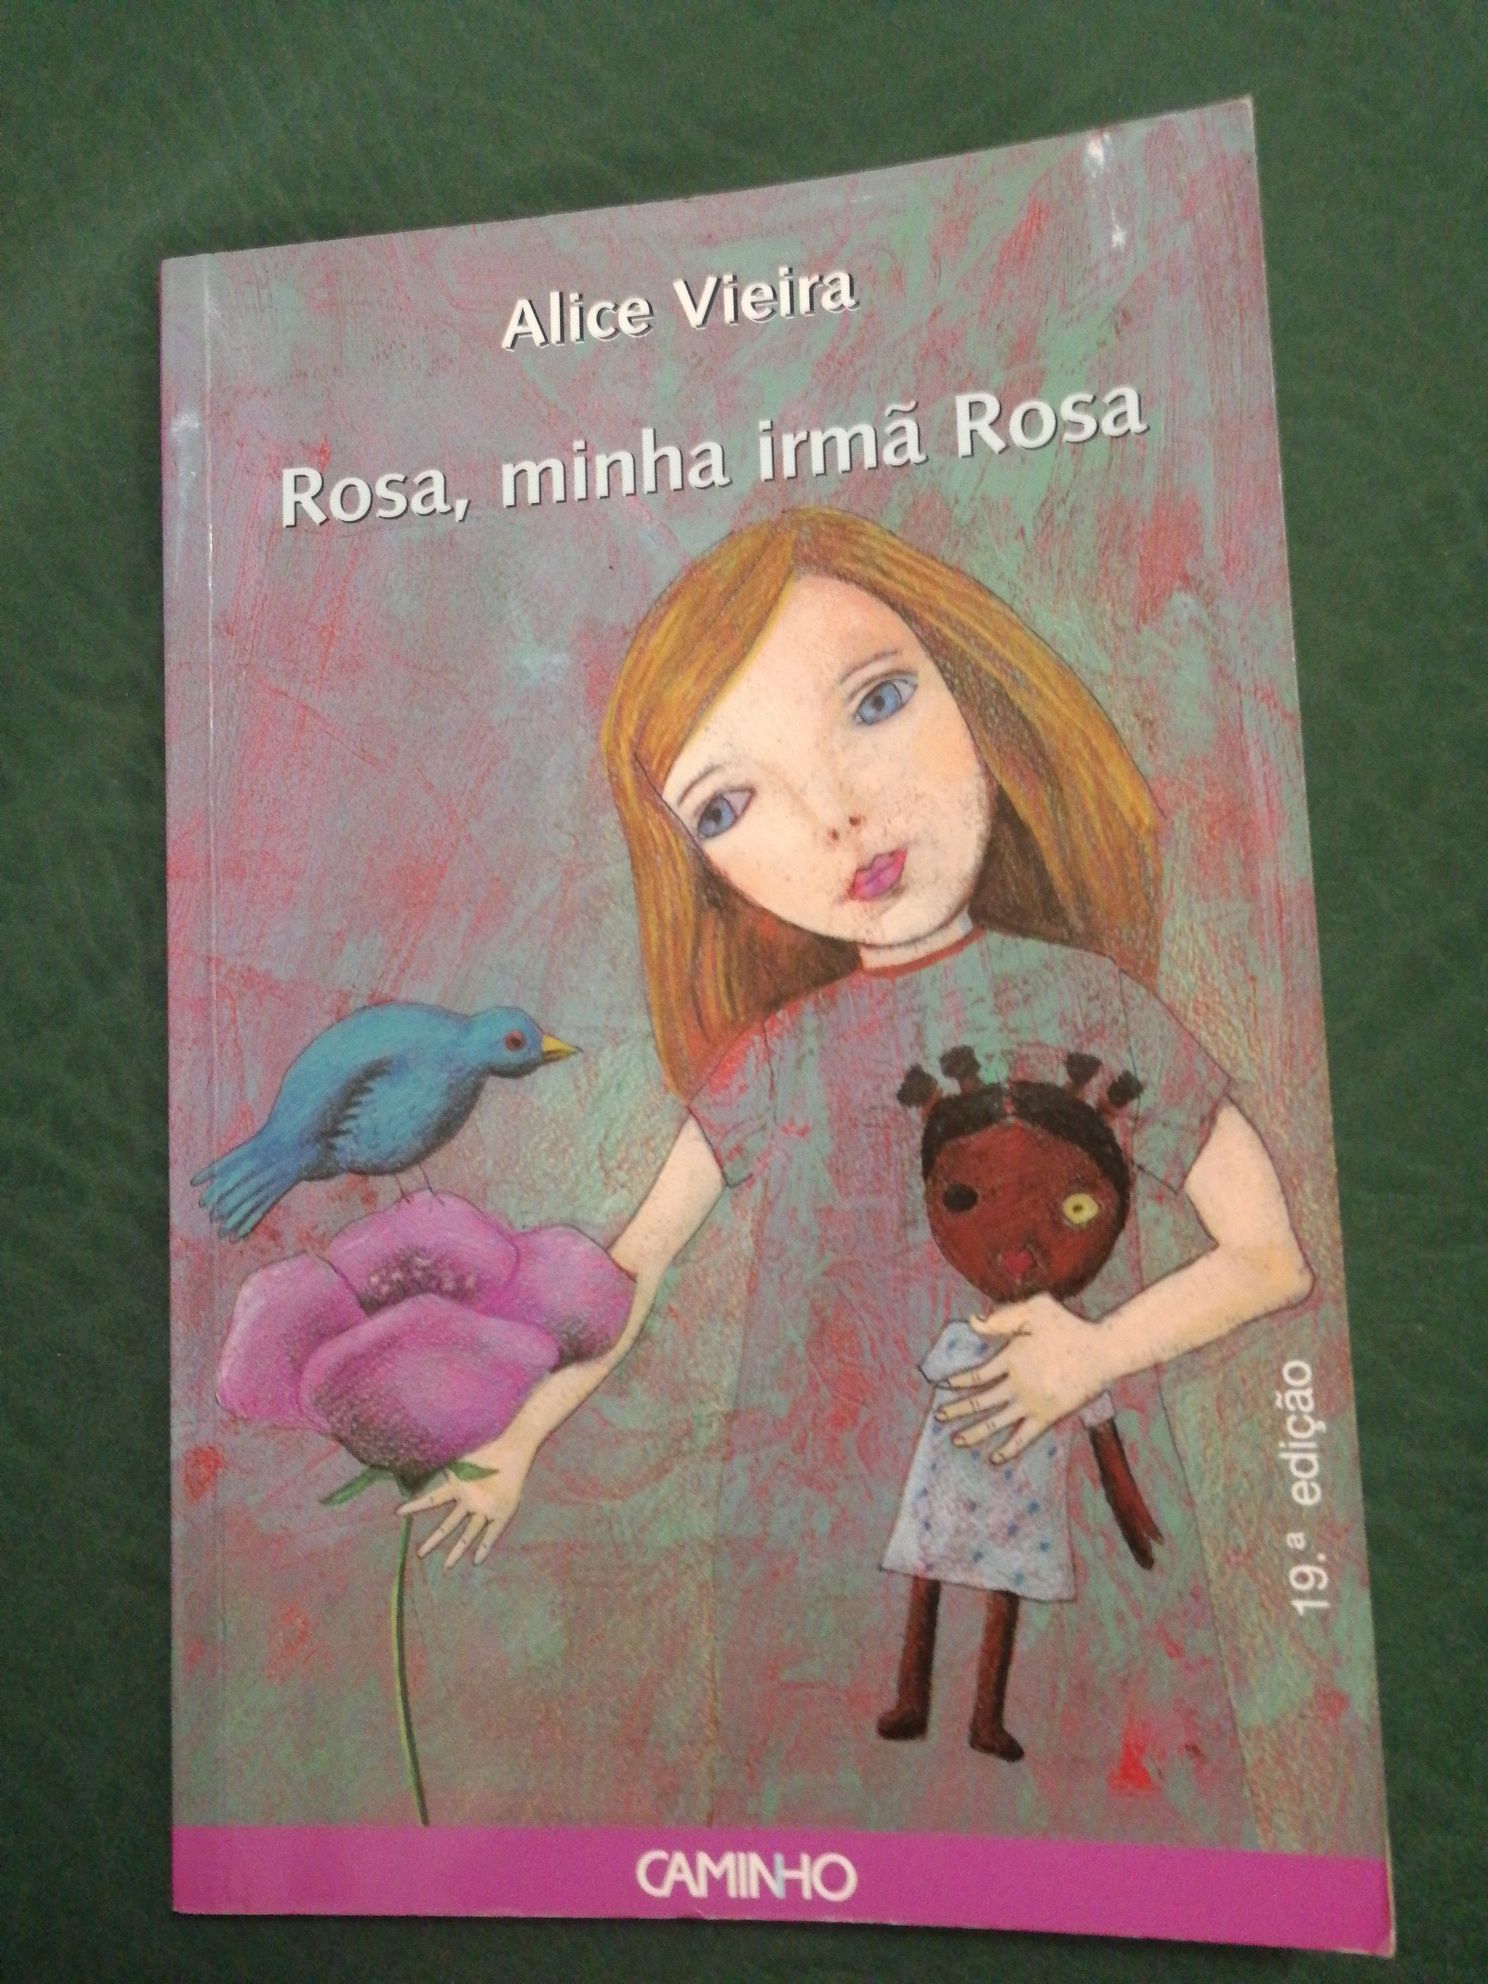 Livro "Rosa, minha irmã Rosa" de Alice Vieira